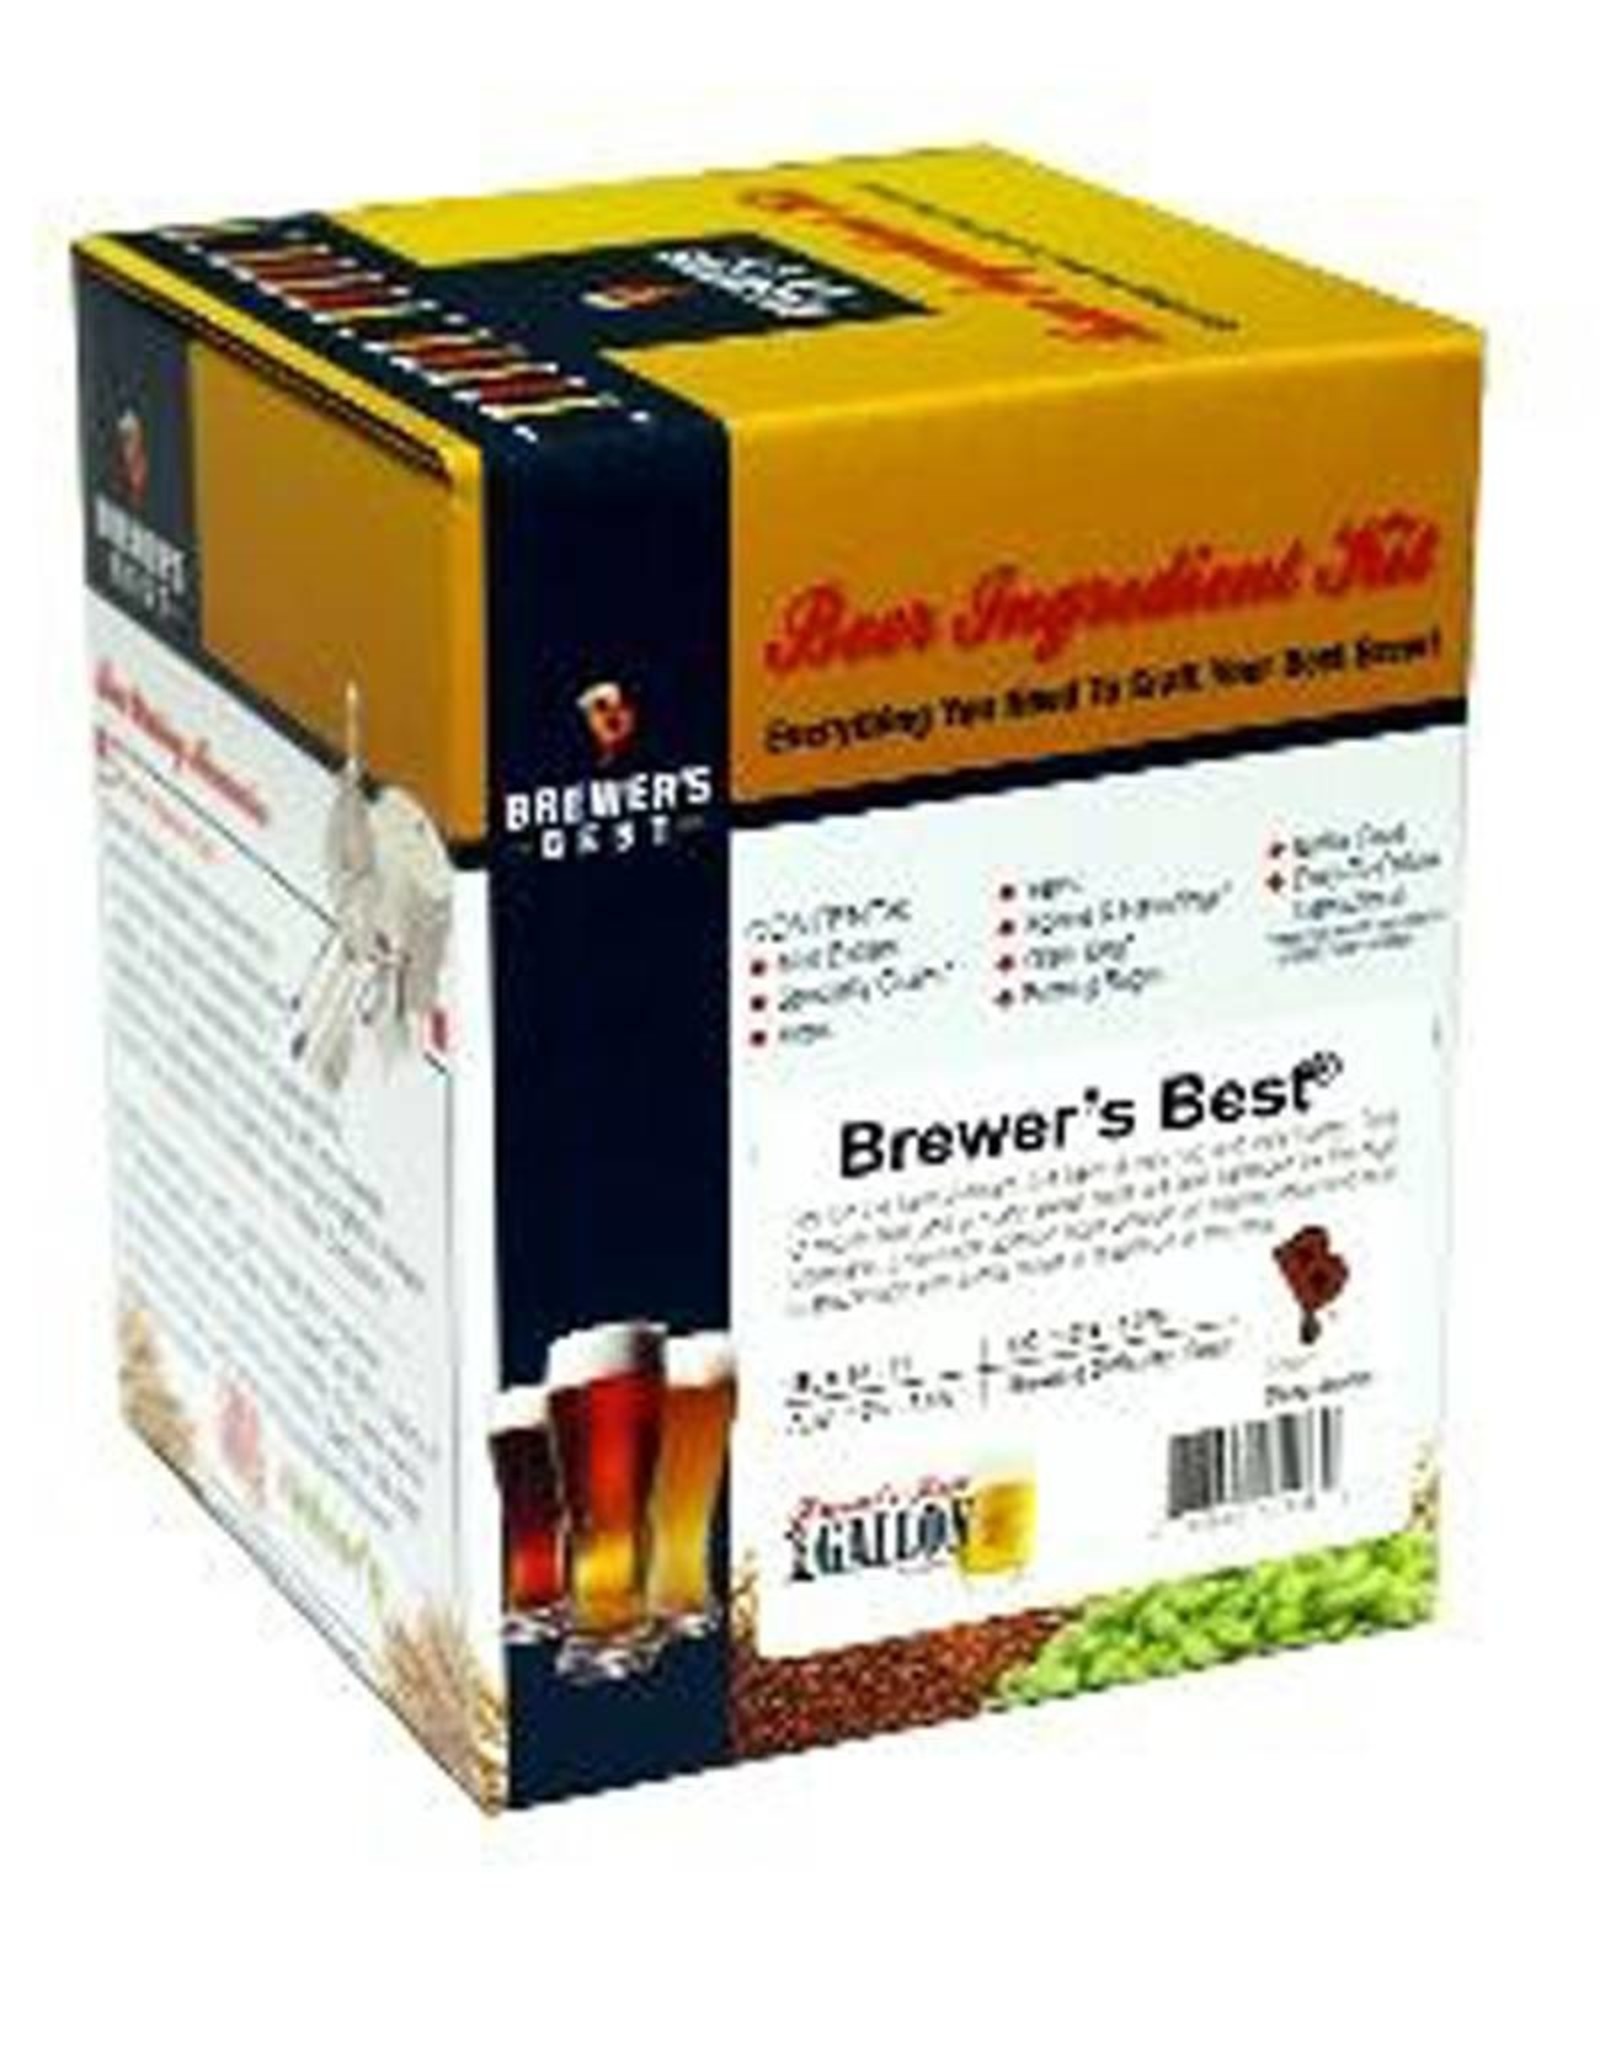 Brewer's Best American Red Ale 1 gal ingredient kit